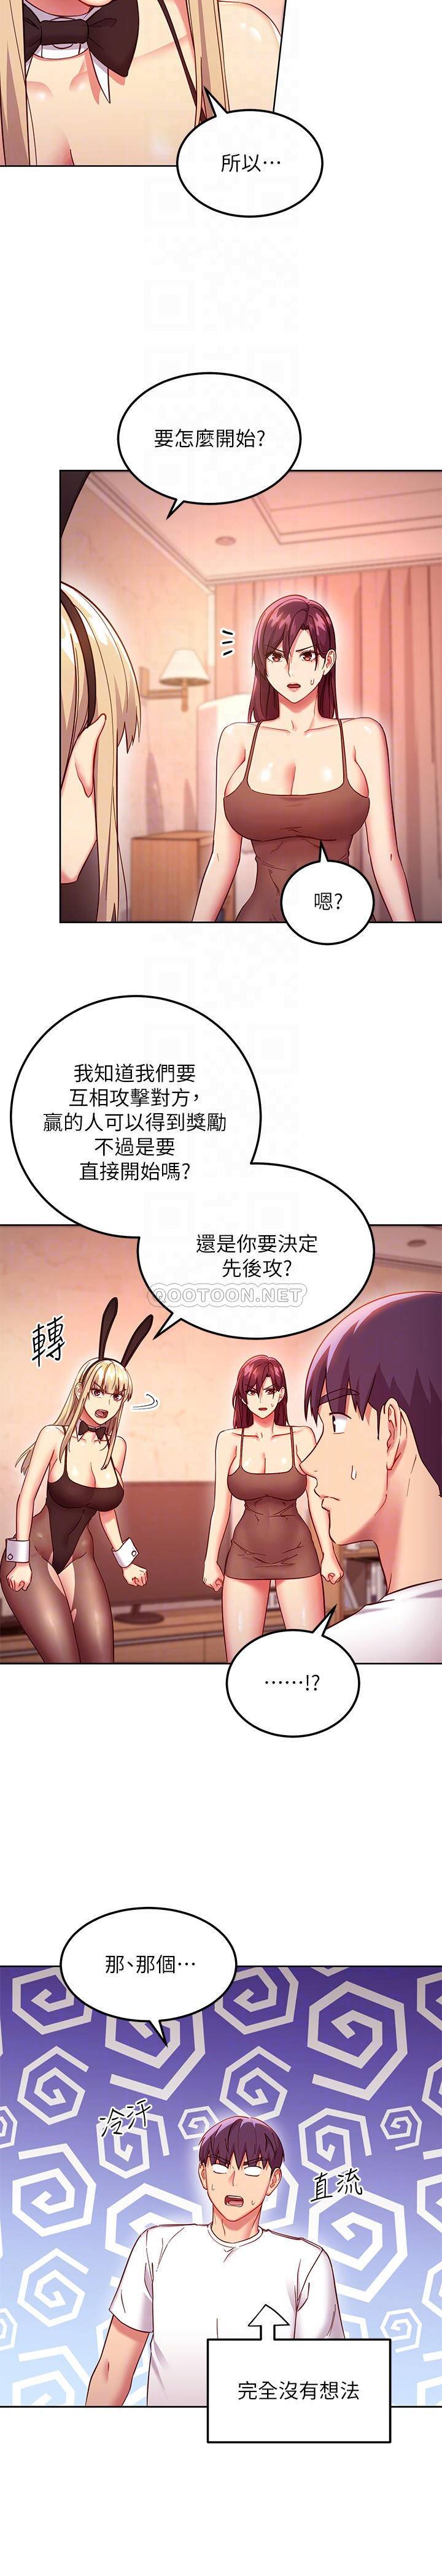 韩国污漫画 繼母的朋友們 第115话攻略静恩的方法 4